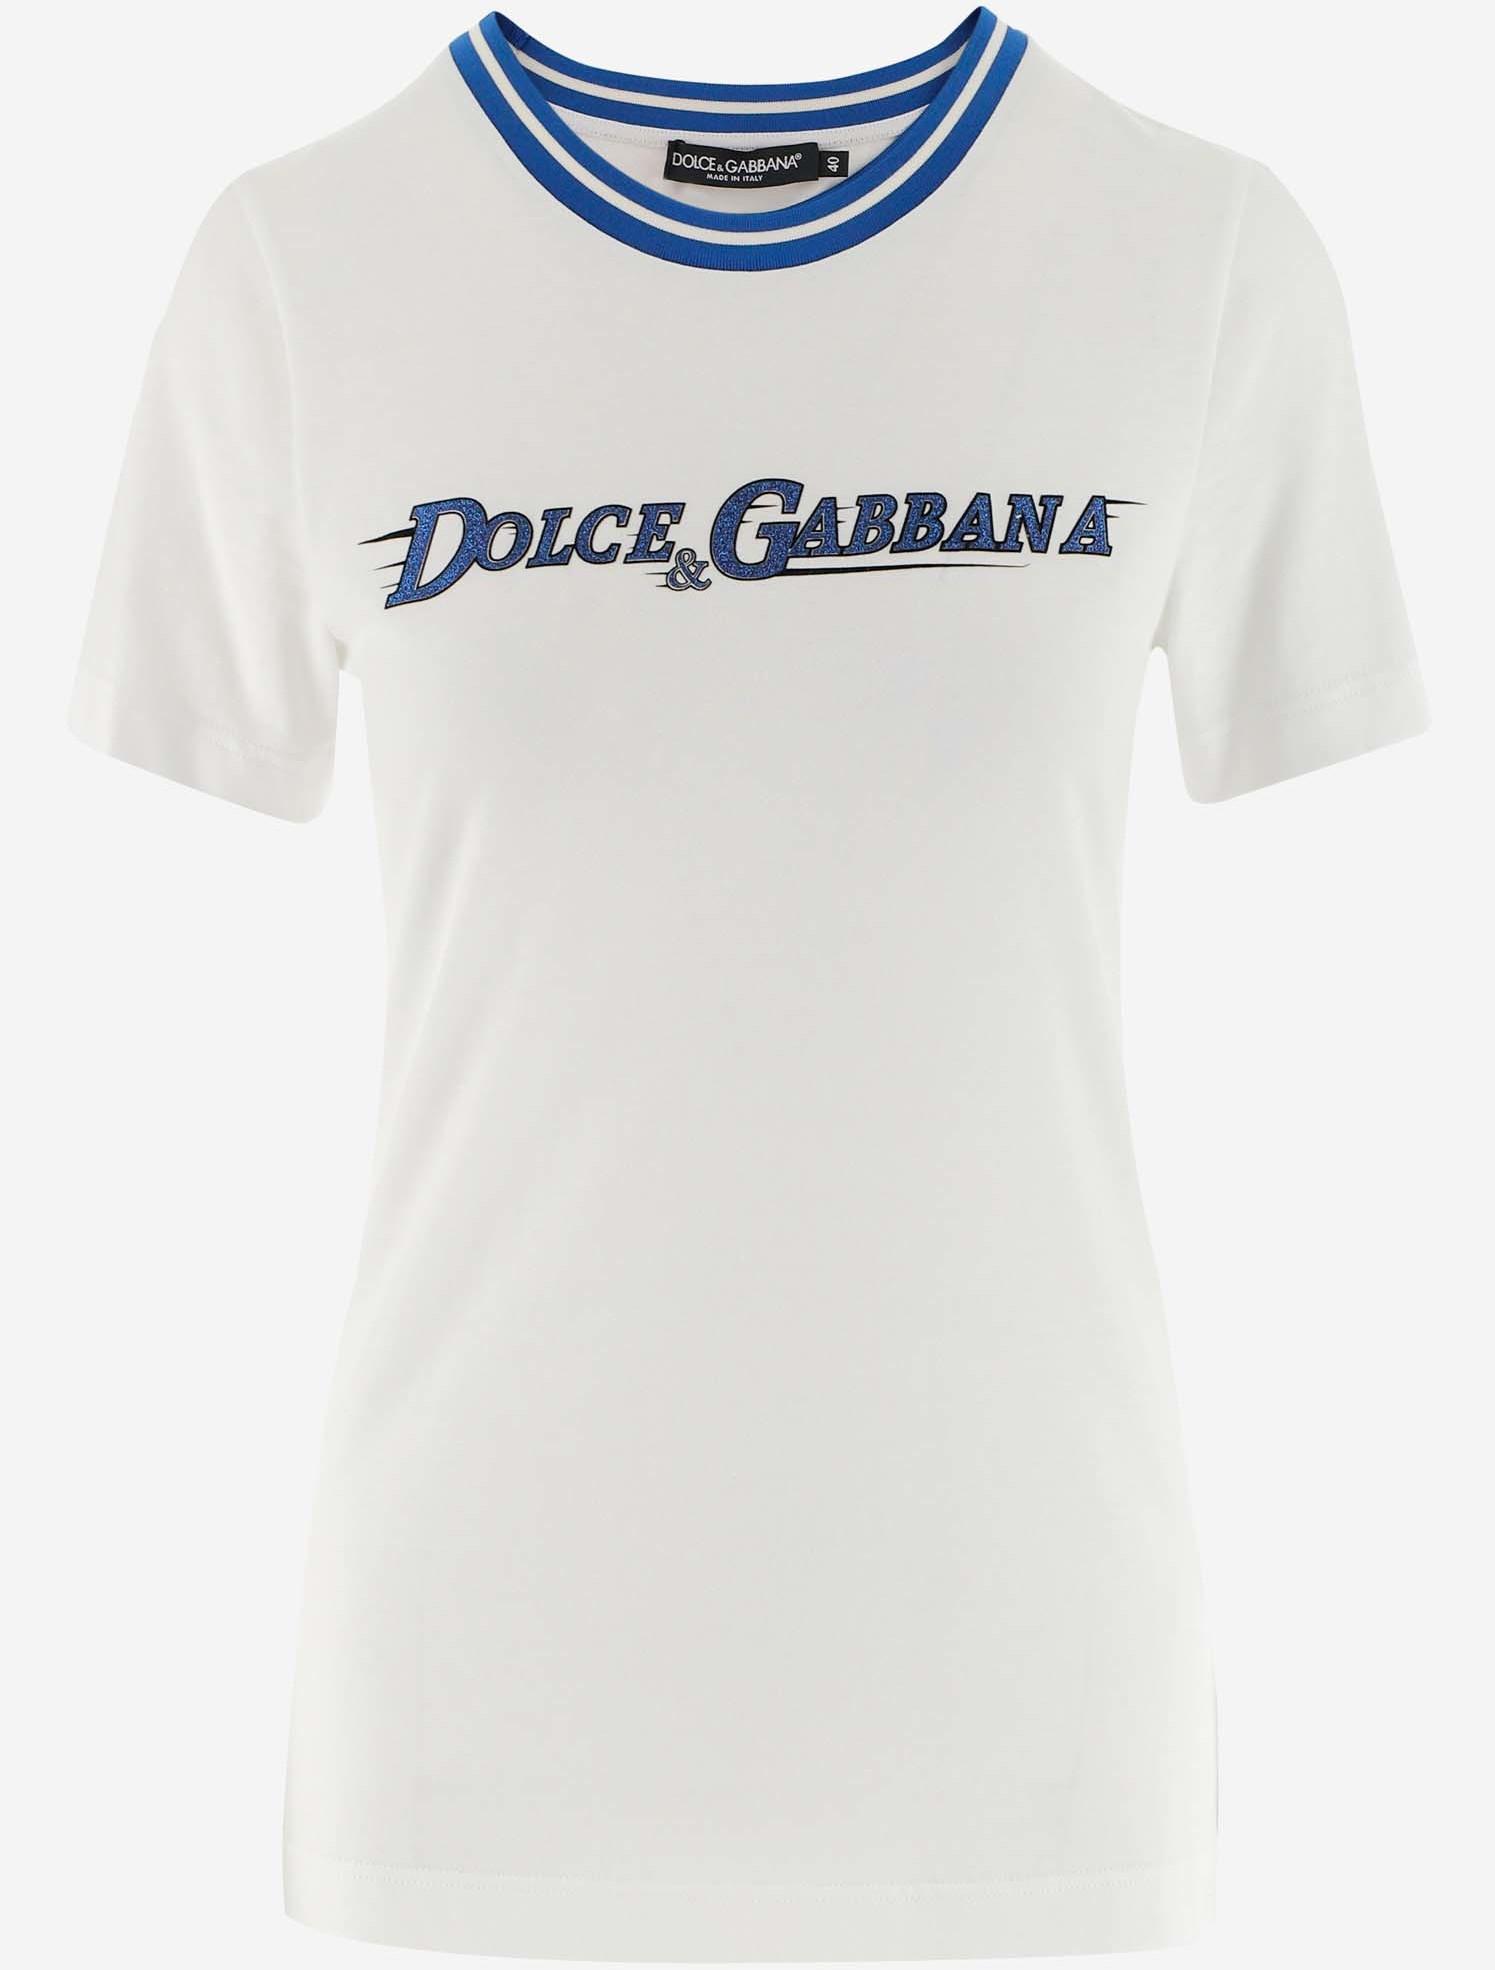 dolce gabbana shirt womens